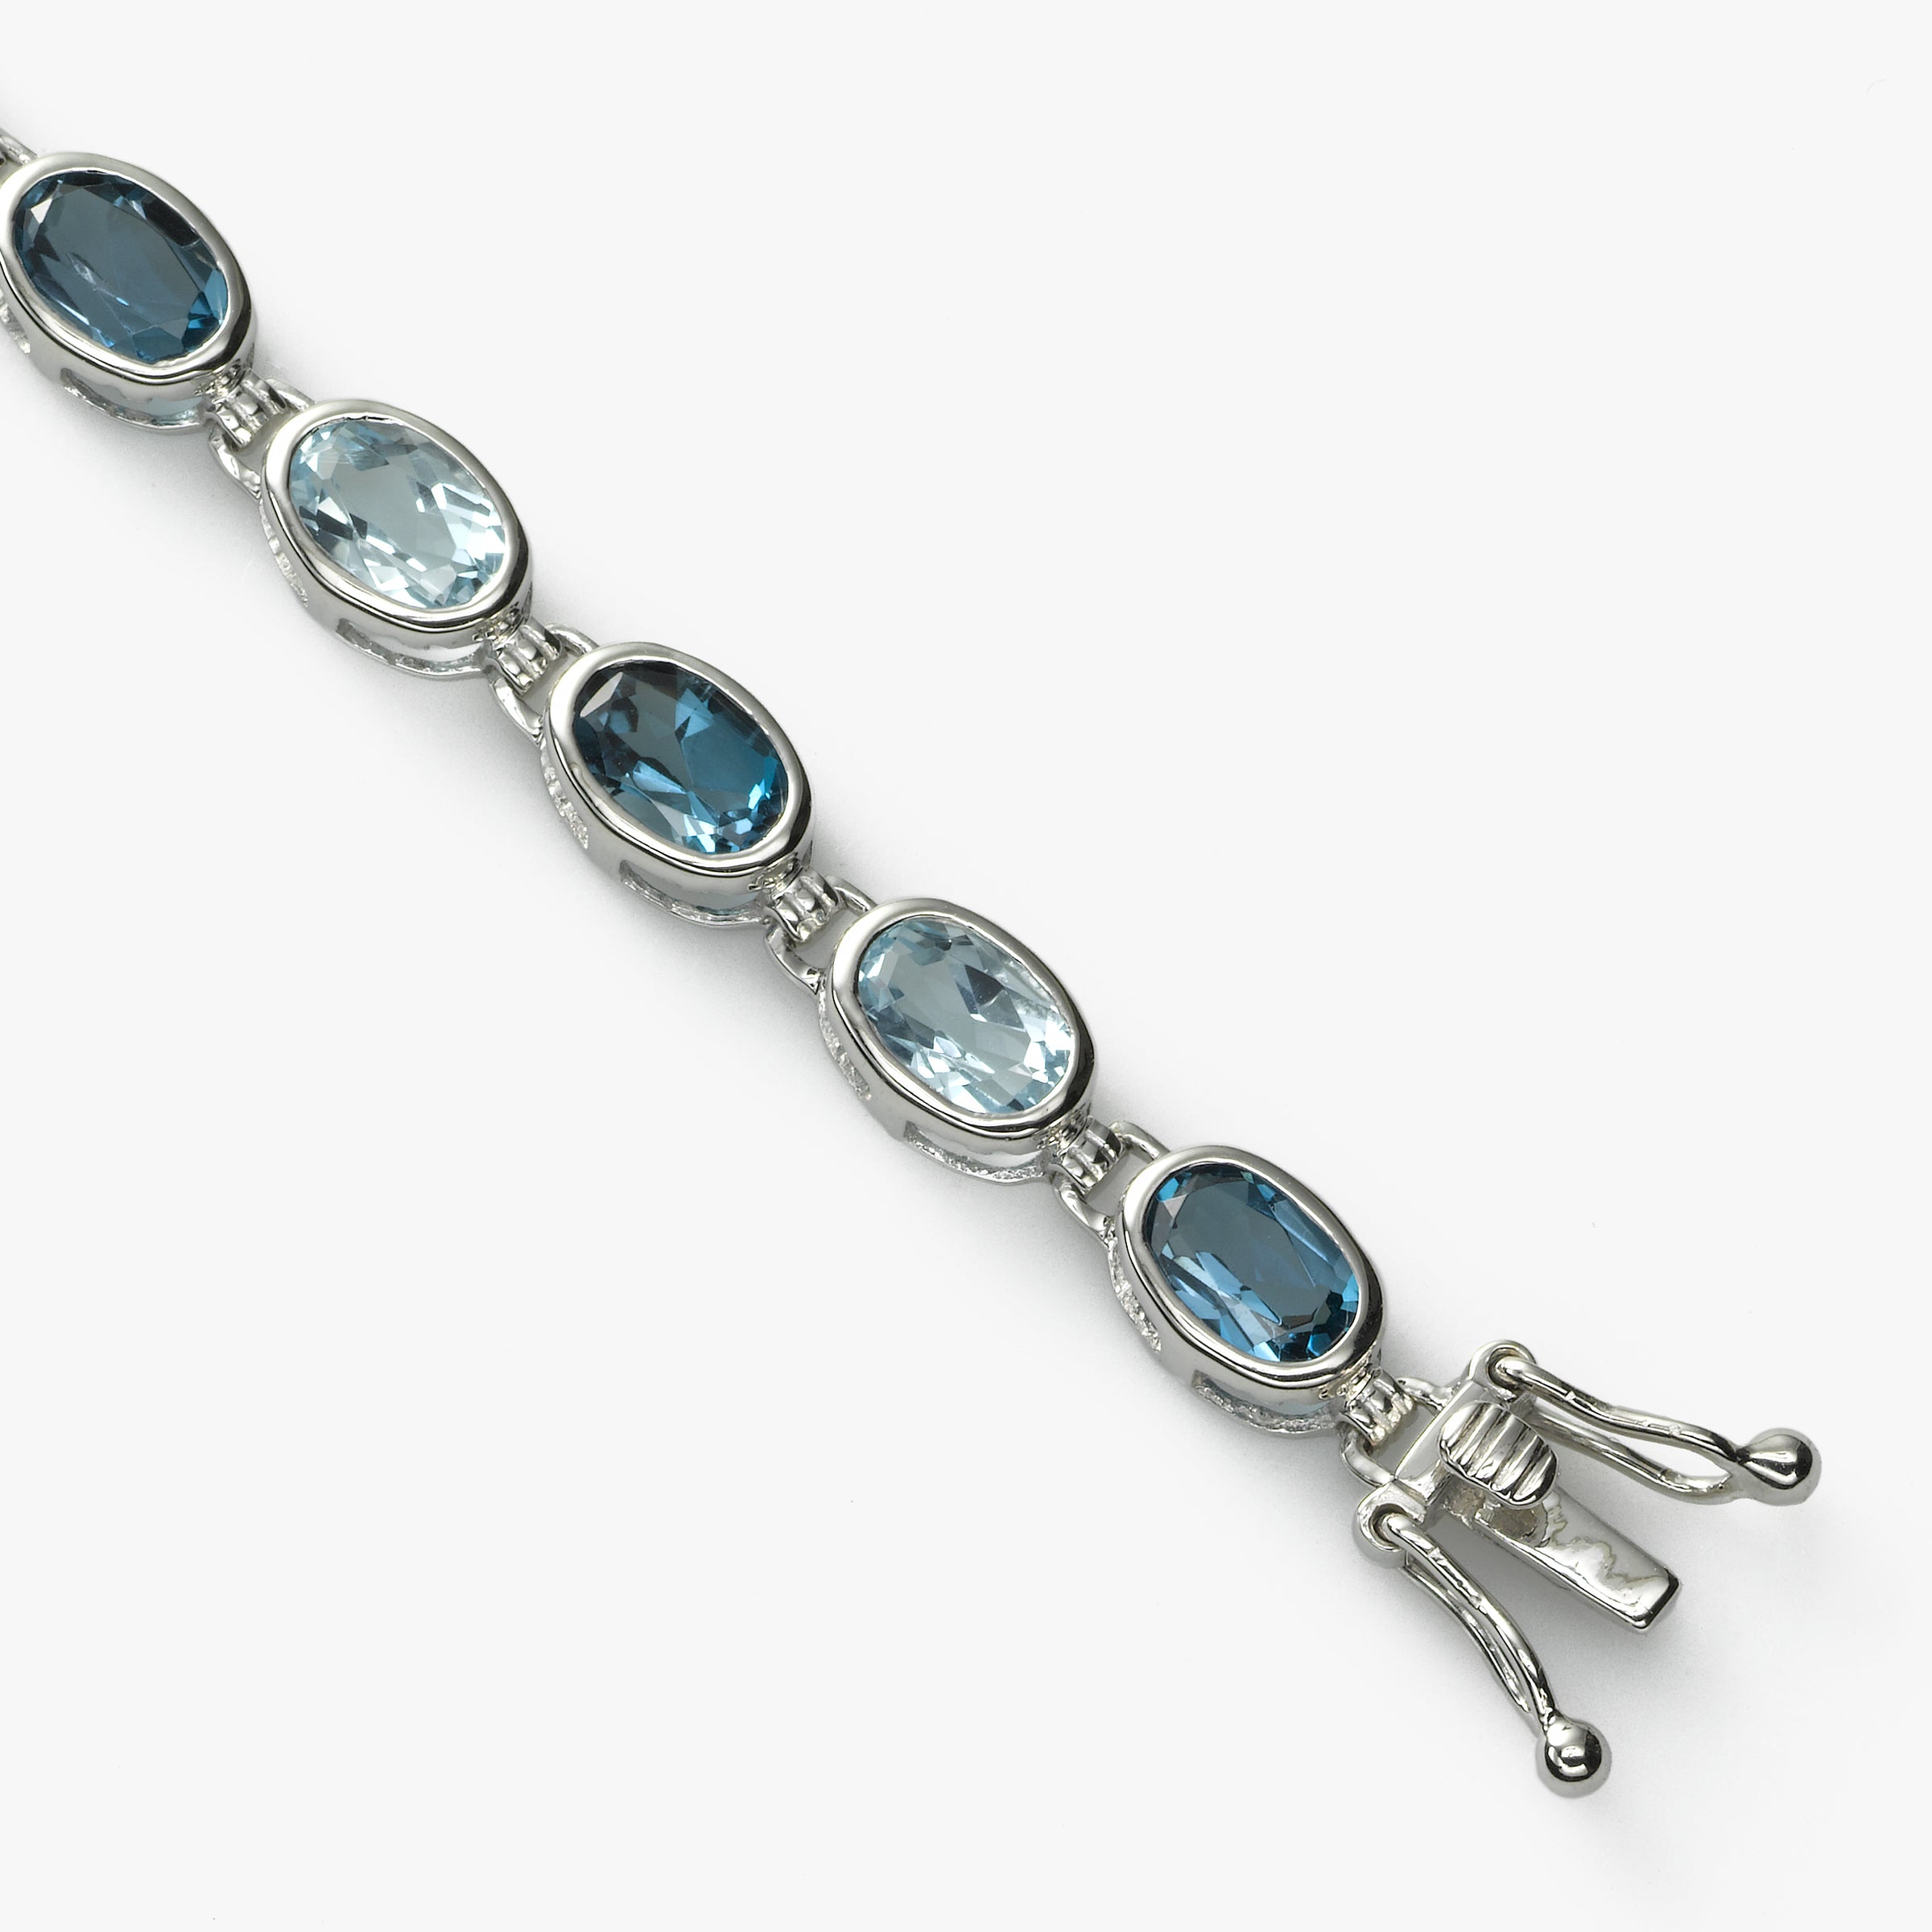 Hand Stitched London Blue Topaz Bracelet – Dandelion Jewelry